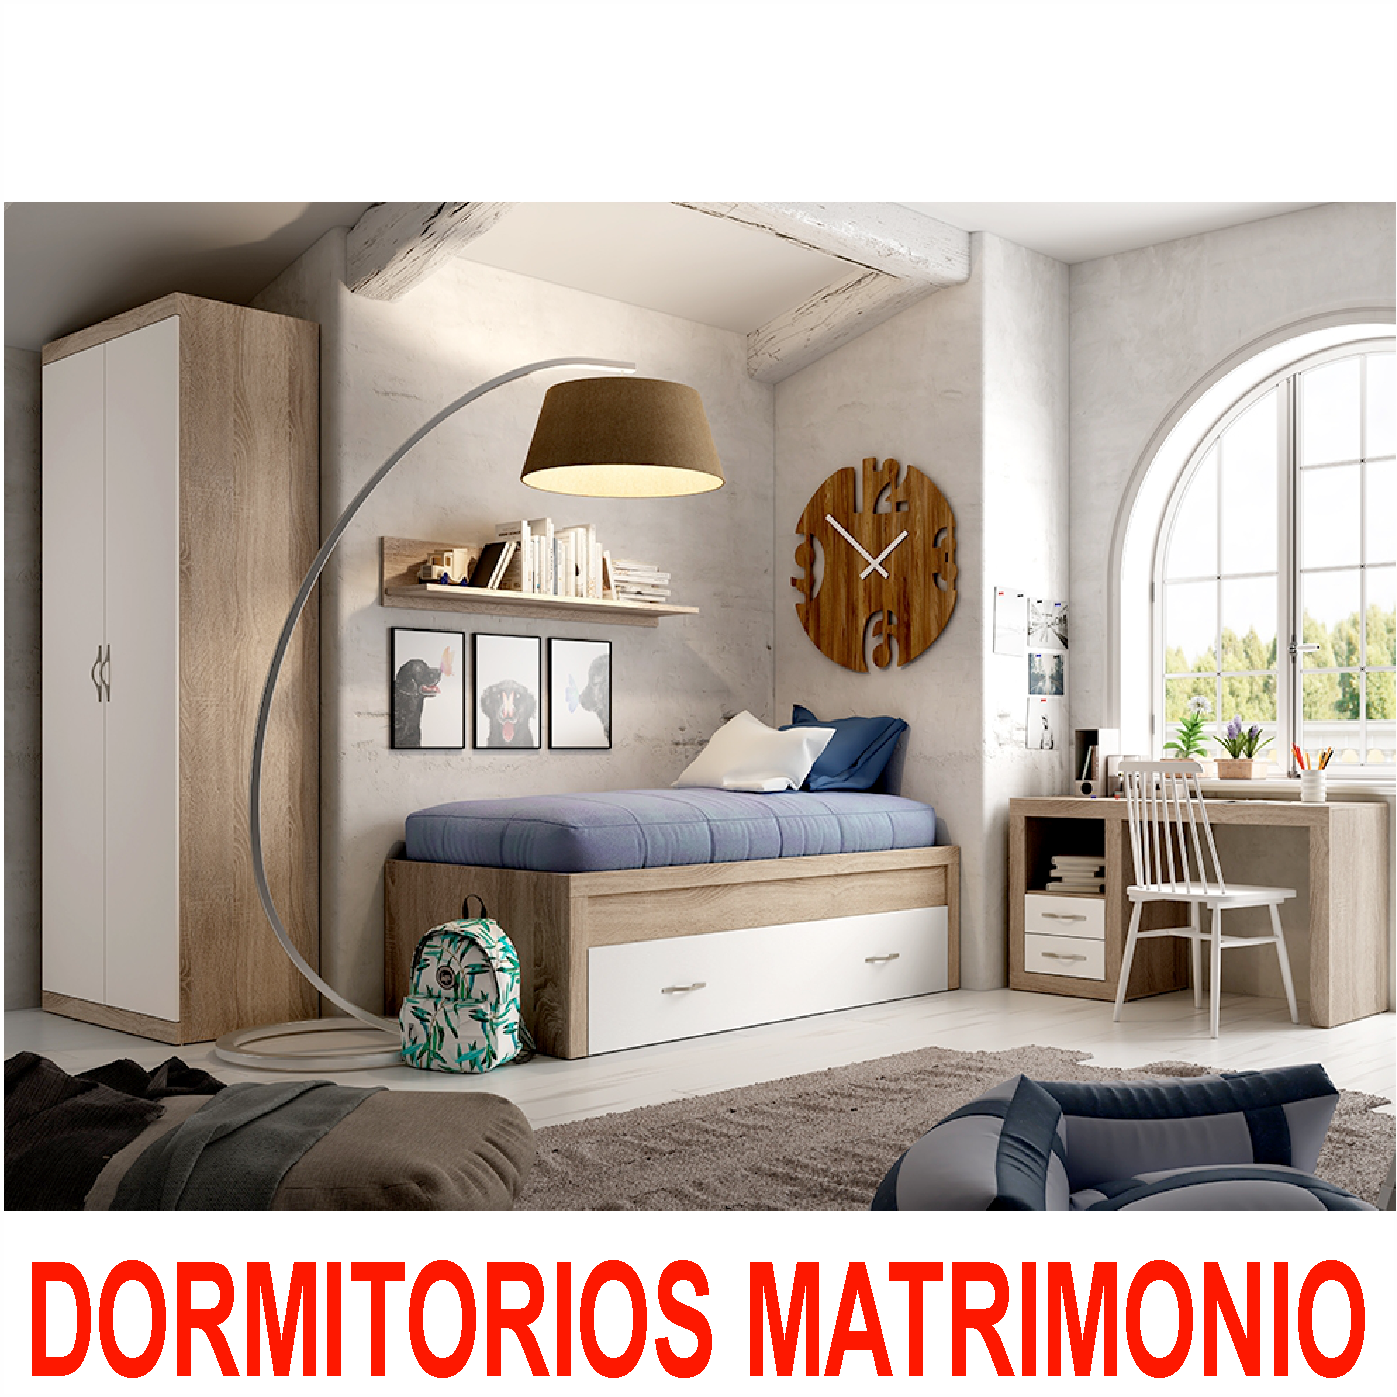 DORMITORIOS MATRIMONIO